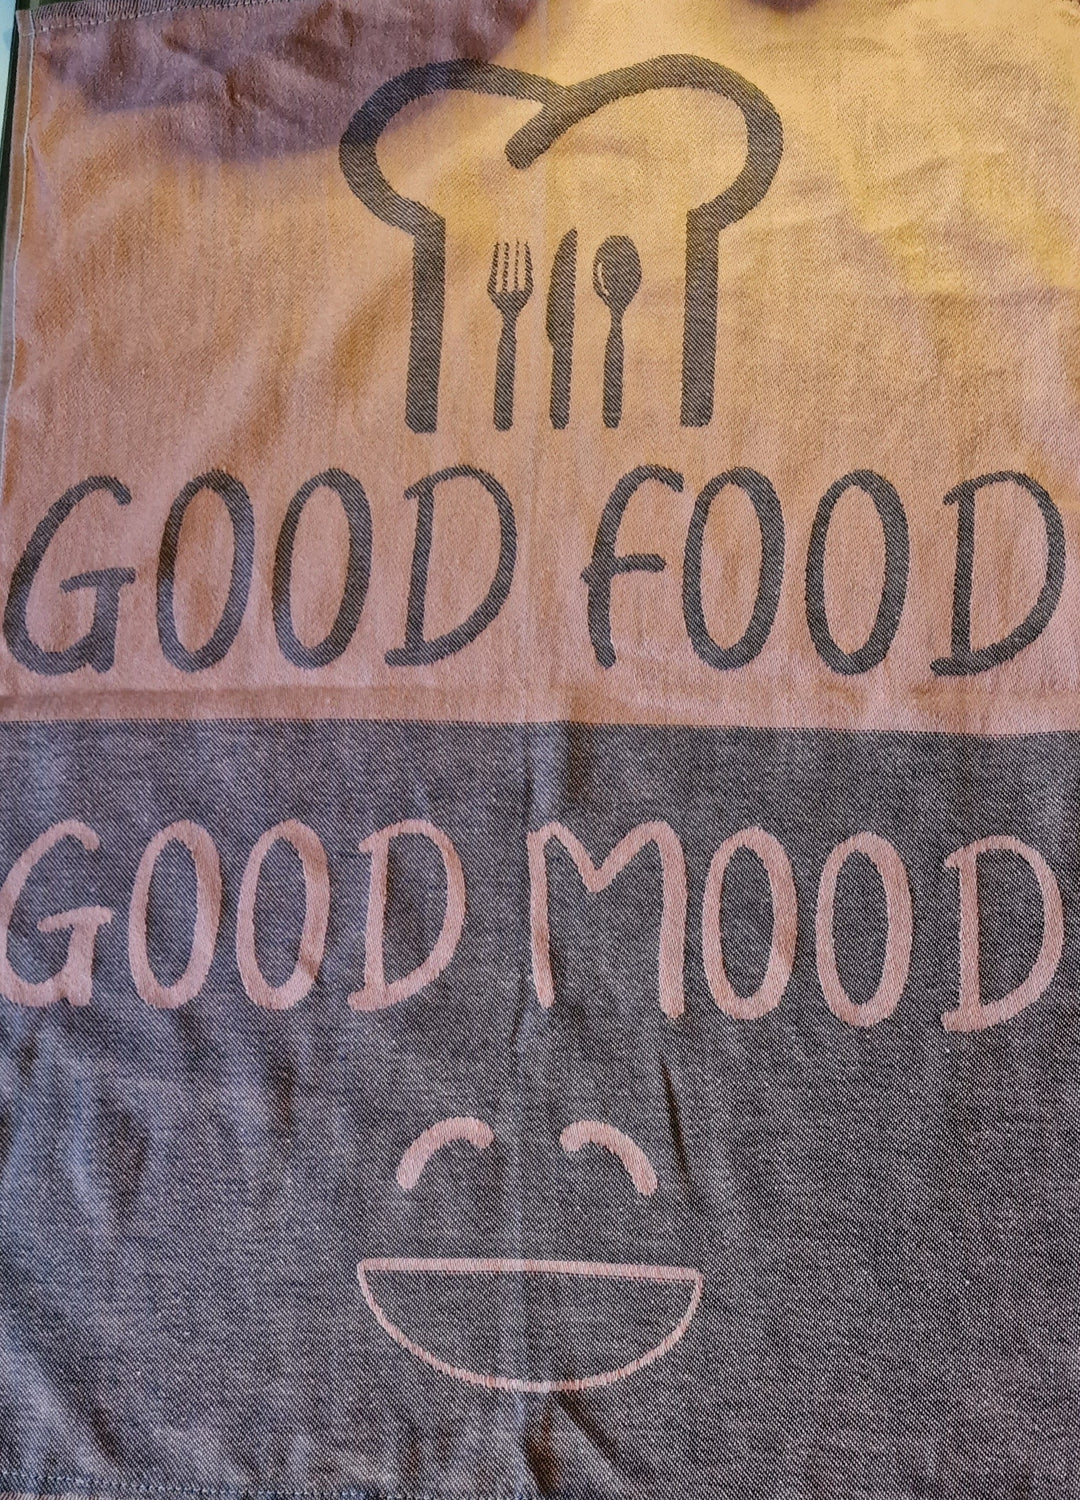  Geschirrtuch, lachs/dunkelgrau  mit Beschriftung "Good food good mood "